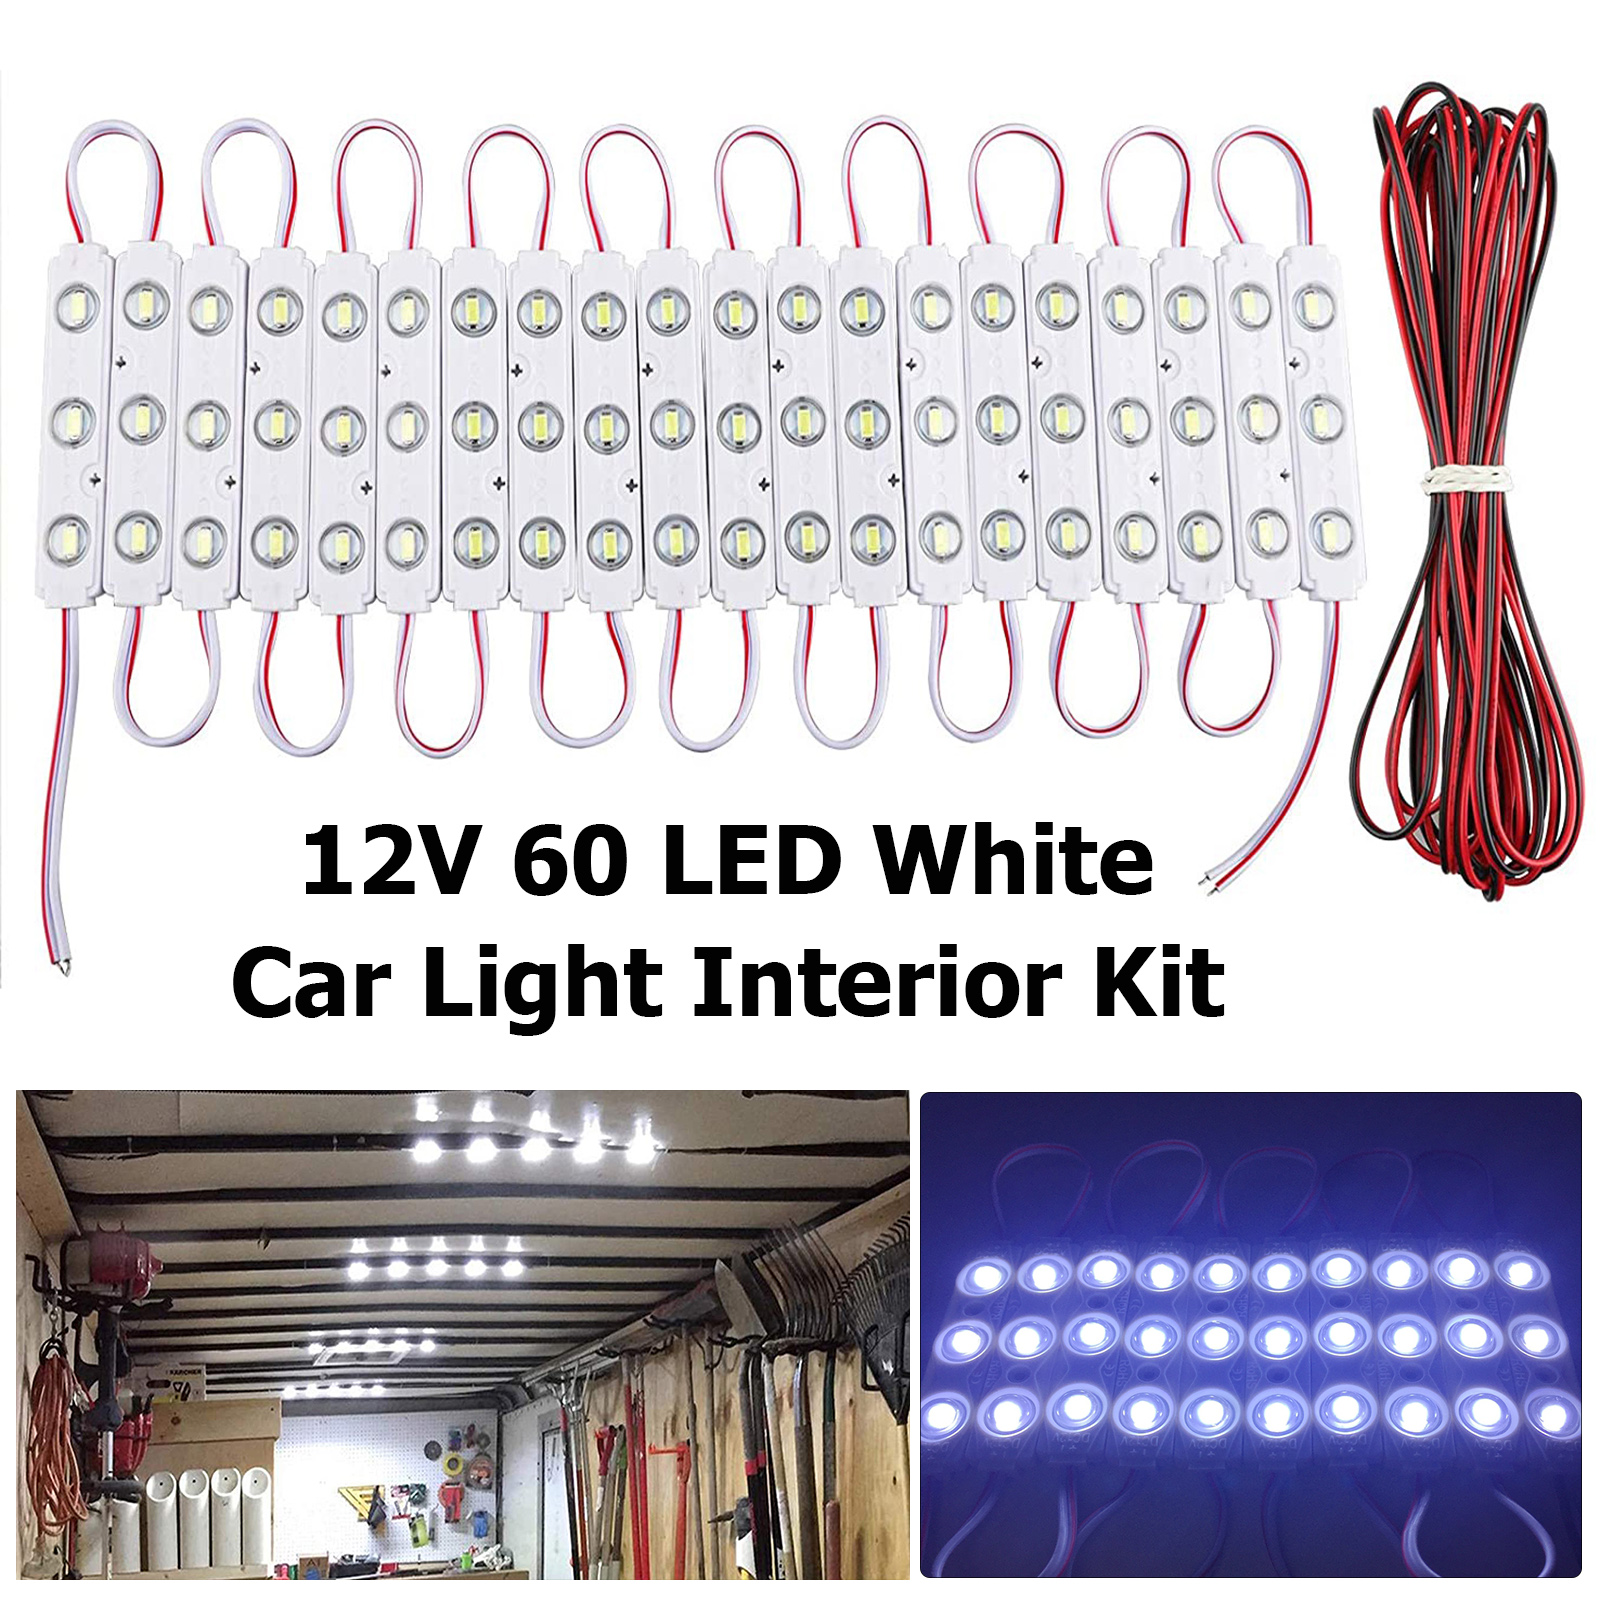 Car Light Kit Interior 12V White 60 LED For LWB Van Sprinter Ducato Transit